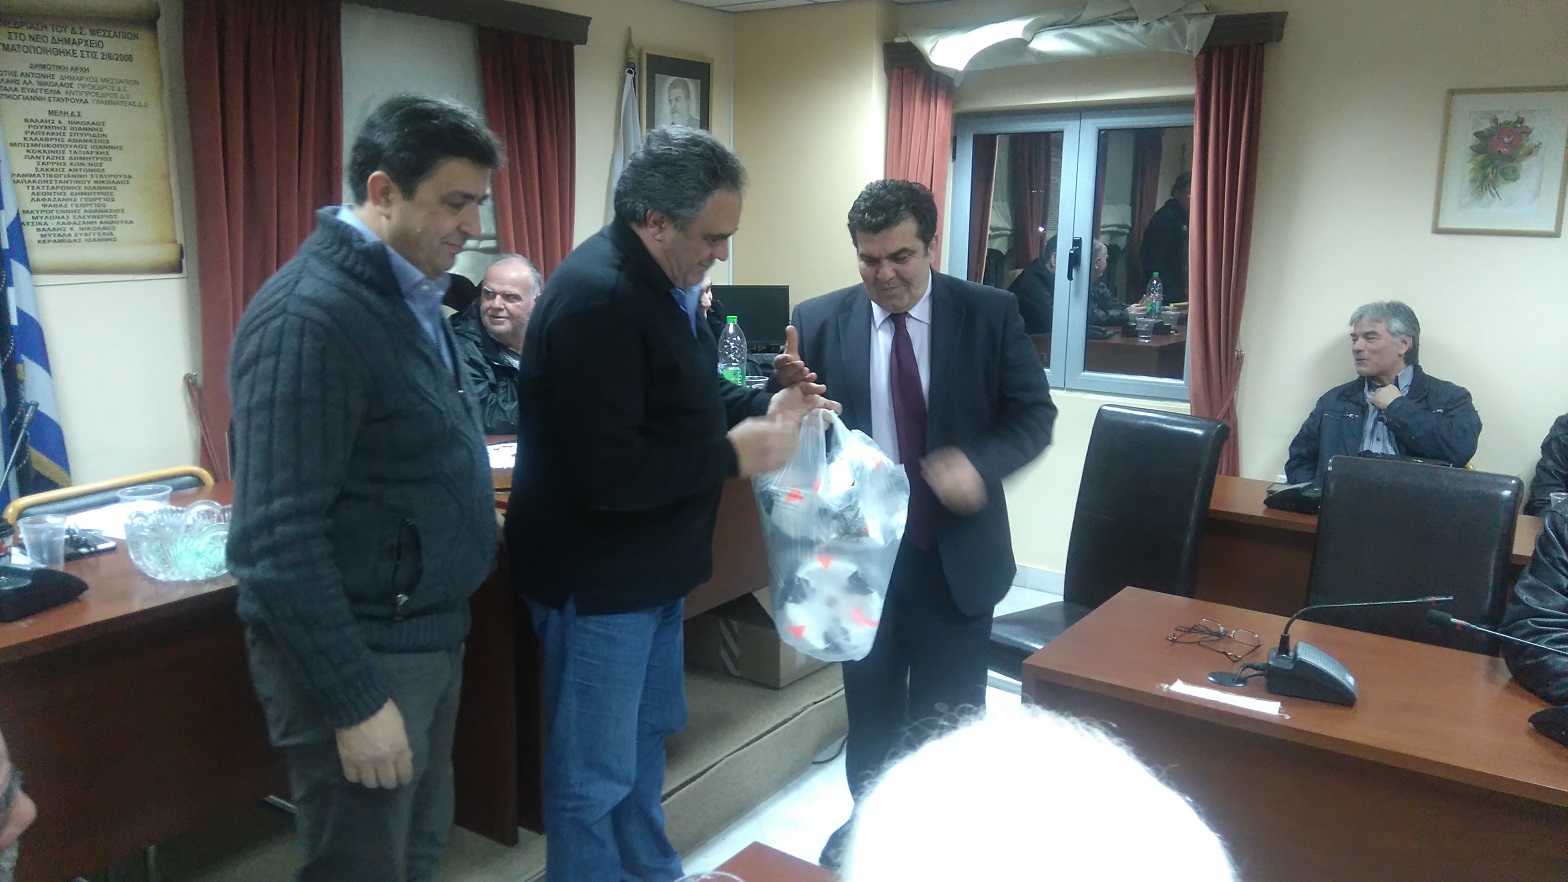 Εκδήλωση κοπής πίτας  σωματείων Δήμου Διρφύων Μεσσαπίων DSC 1230